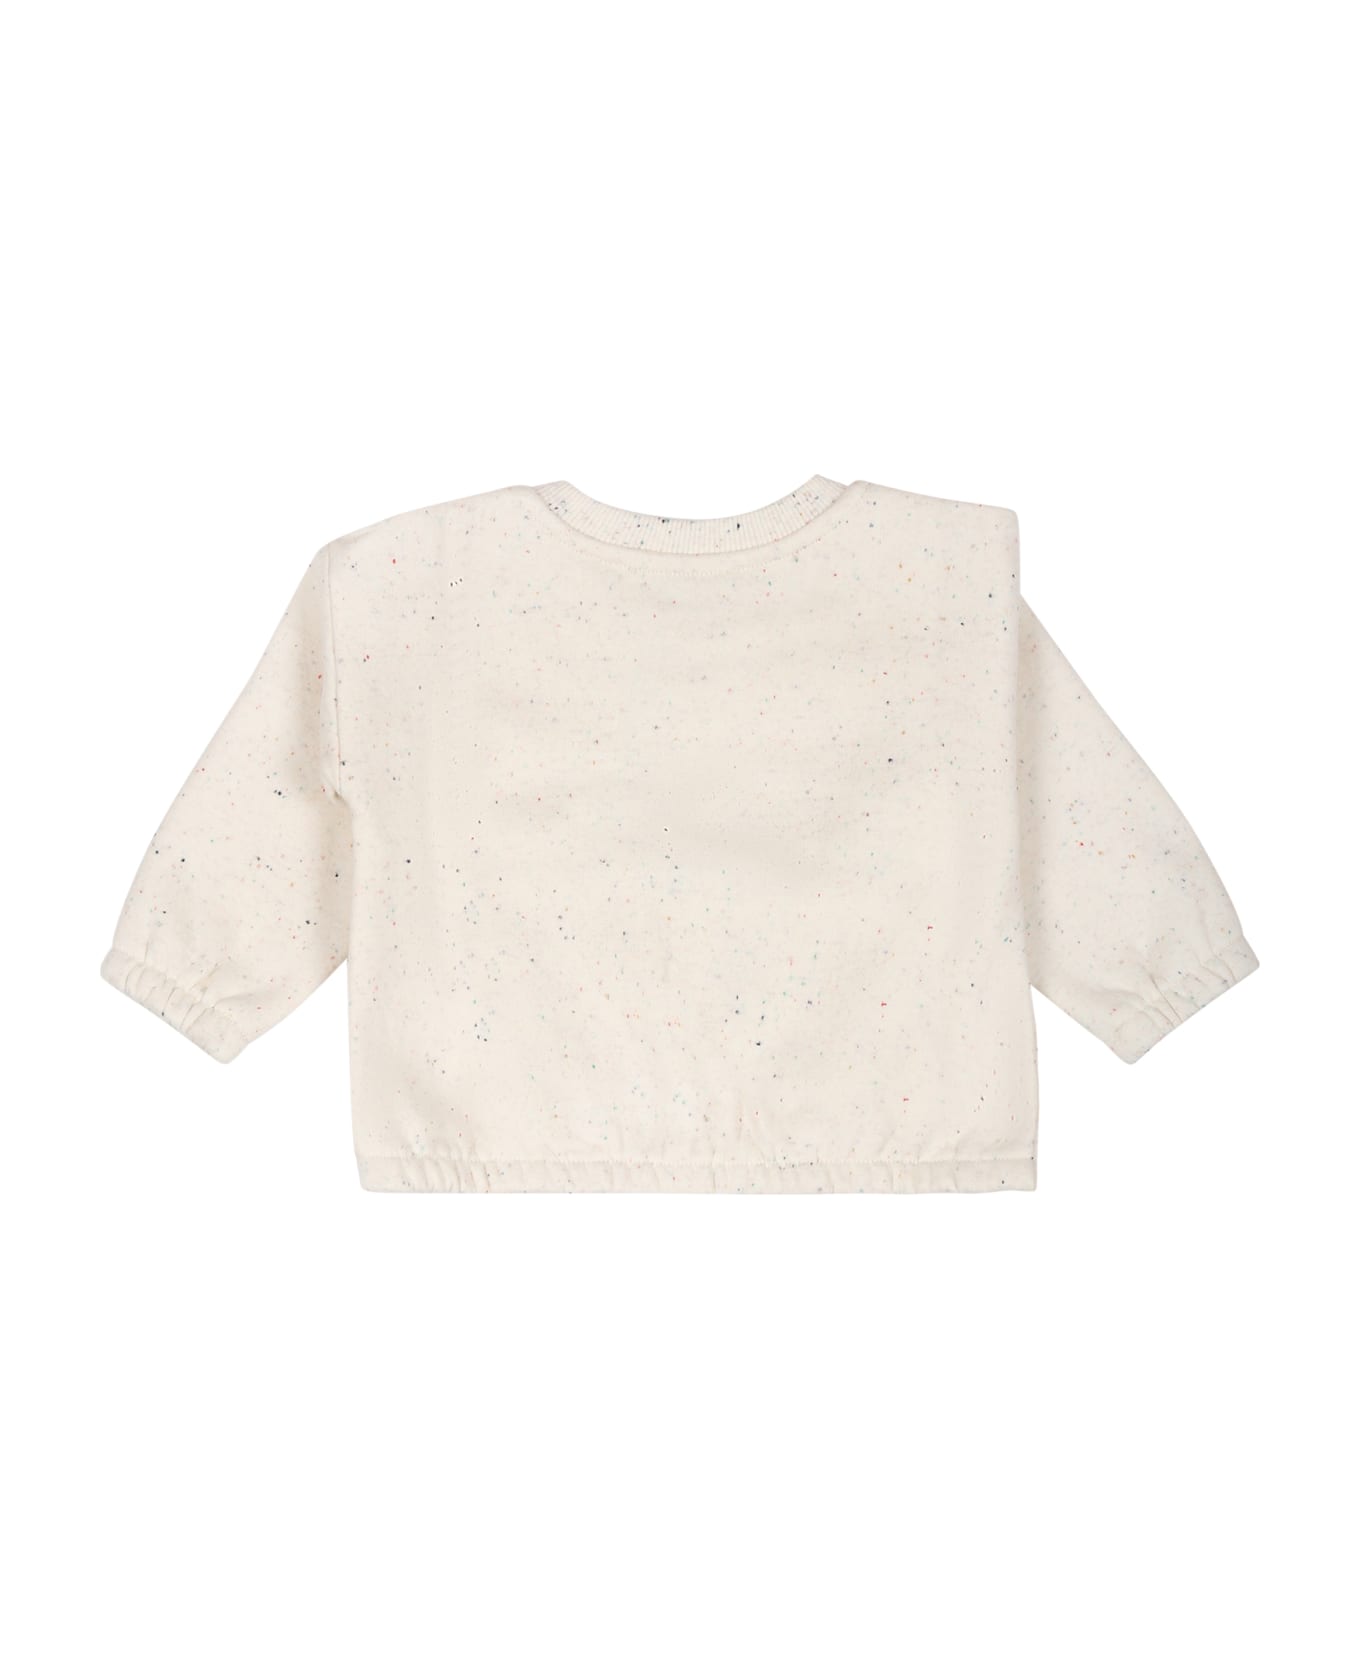 Kenzo Kids Ivory Sweatshirt For Baby Girl With Logo - Ivory